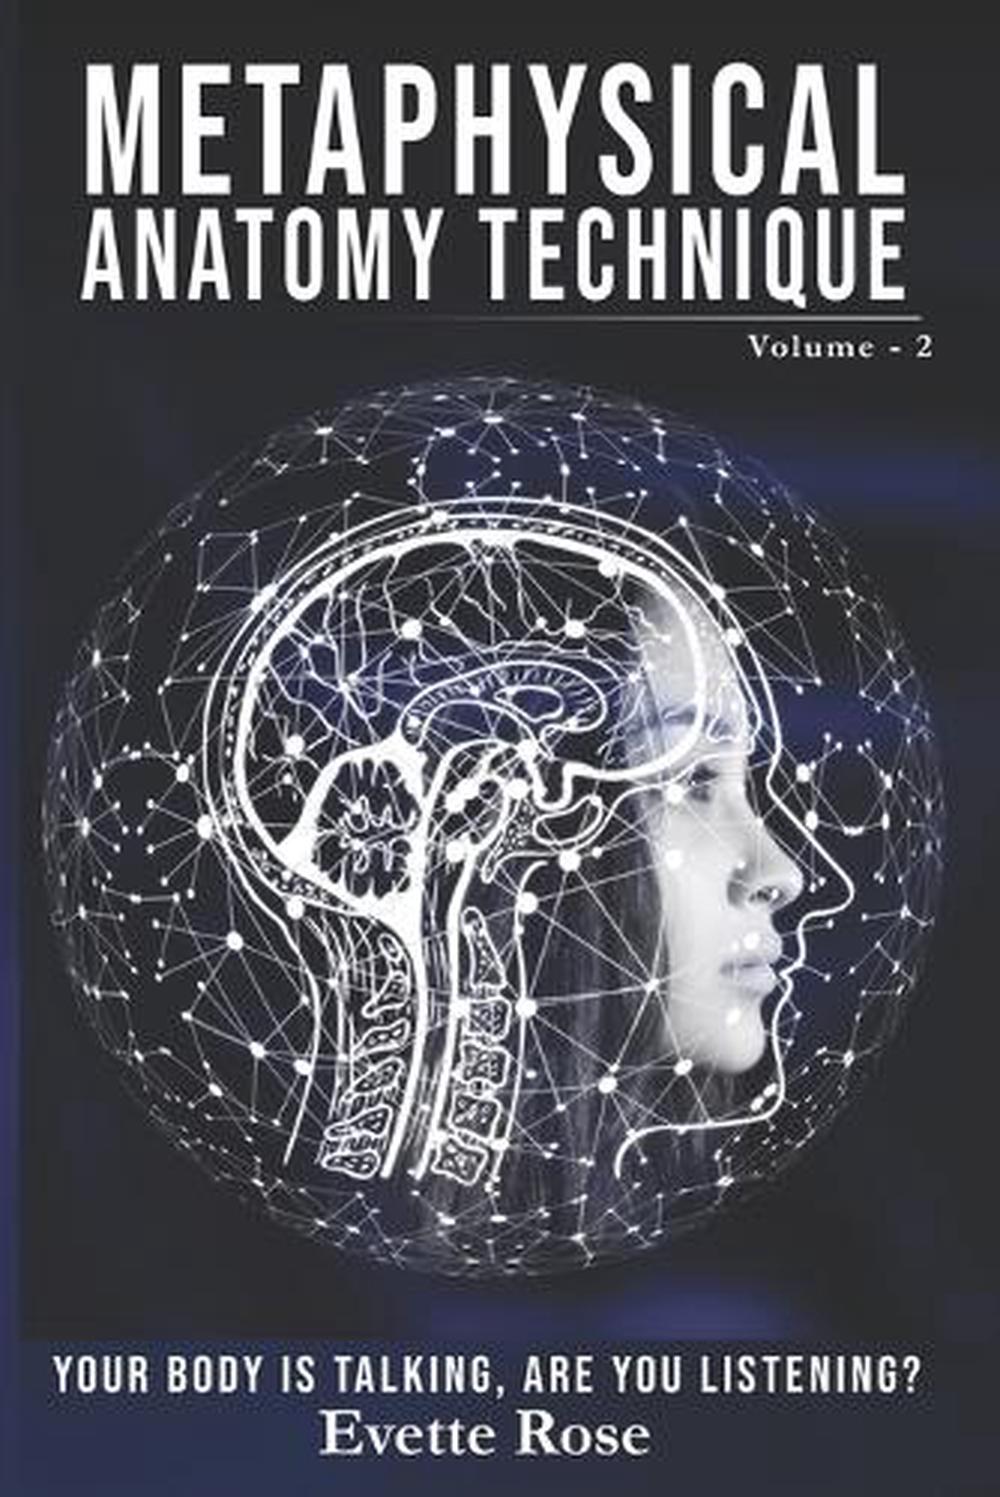 Technique d'anatomie métaphysique Volume 2 : Votre corps parle, écoutez-vous ? - Photo 1 sur 1